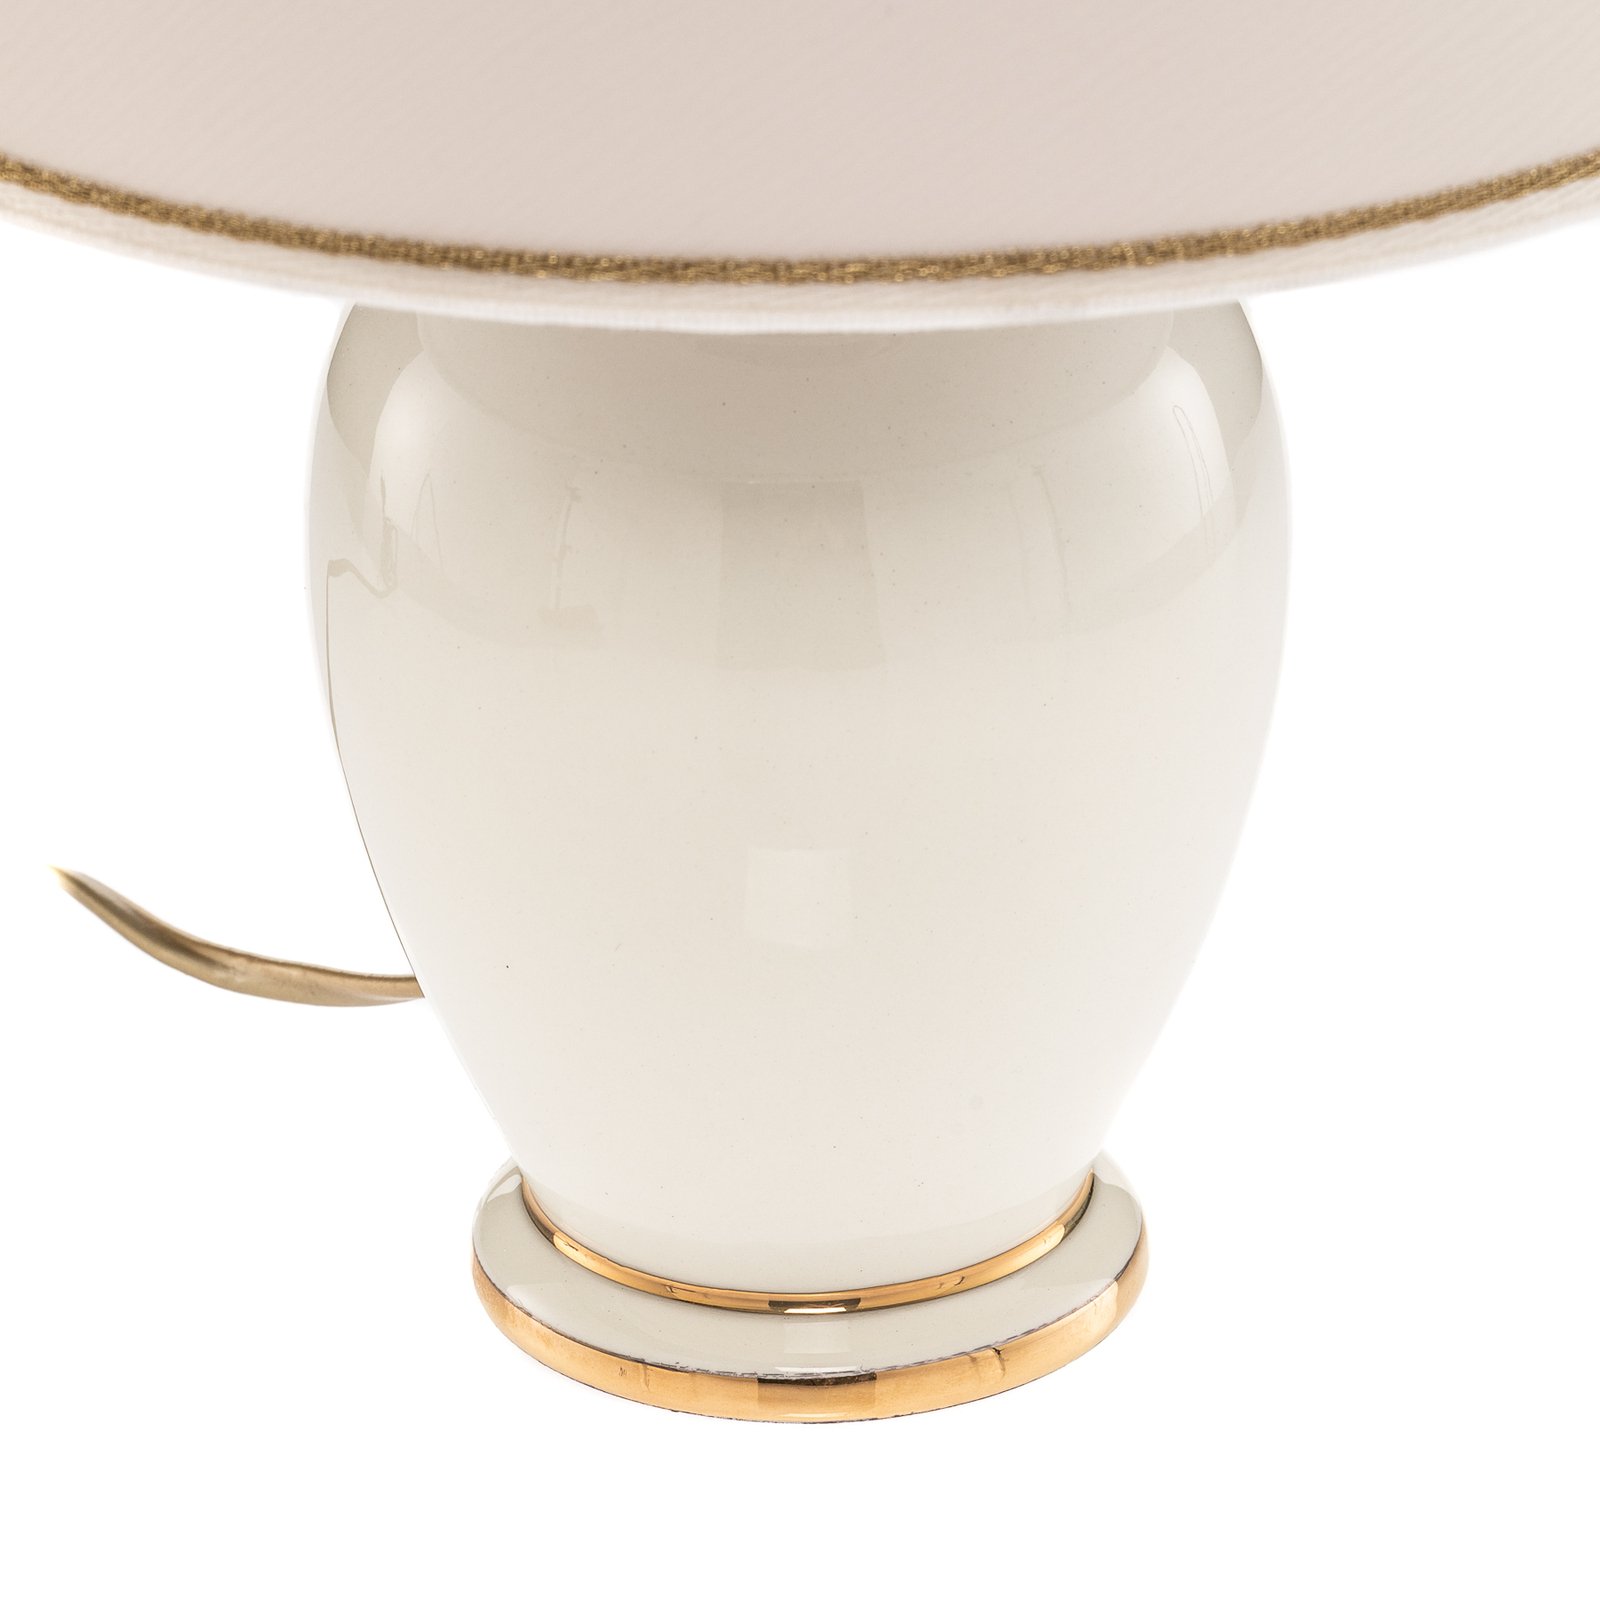 Giardino Avorio table lamp in white/gold, Ø 25 cm